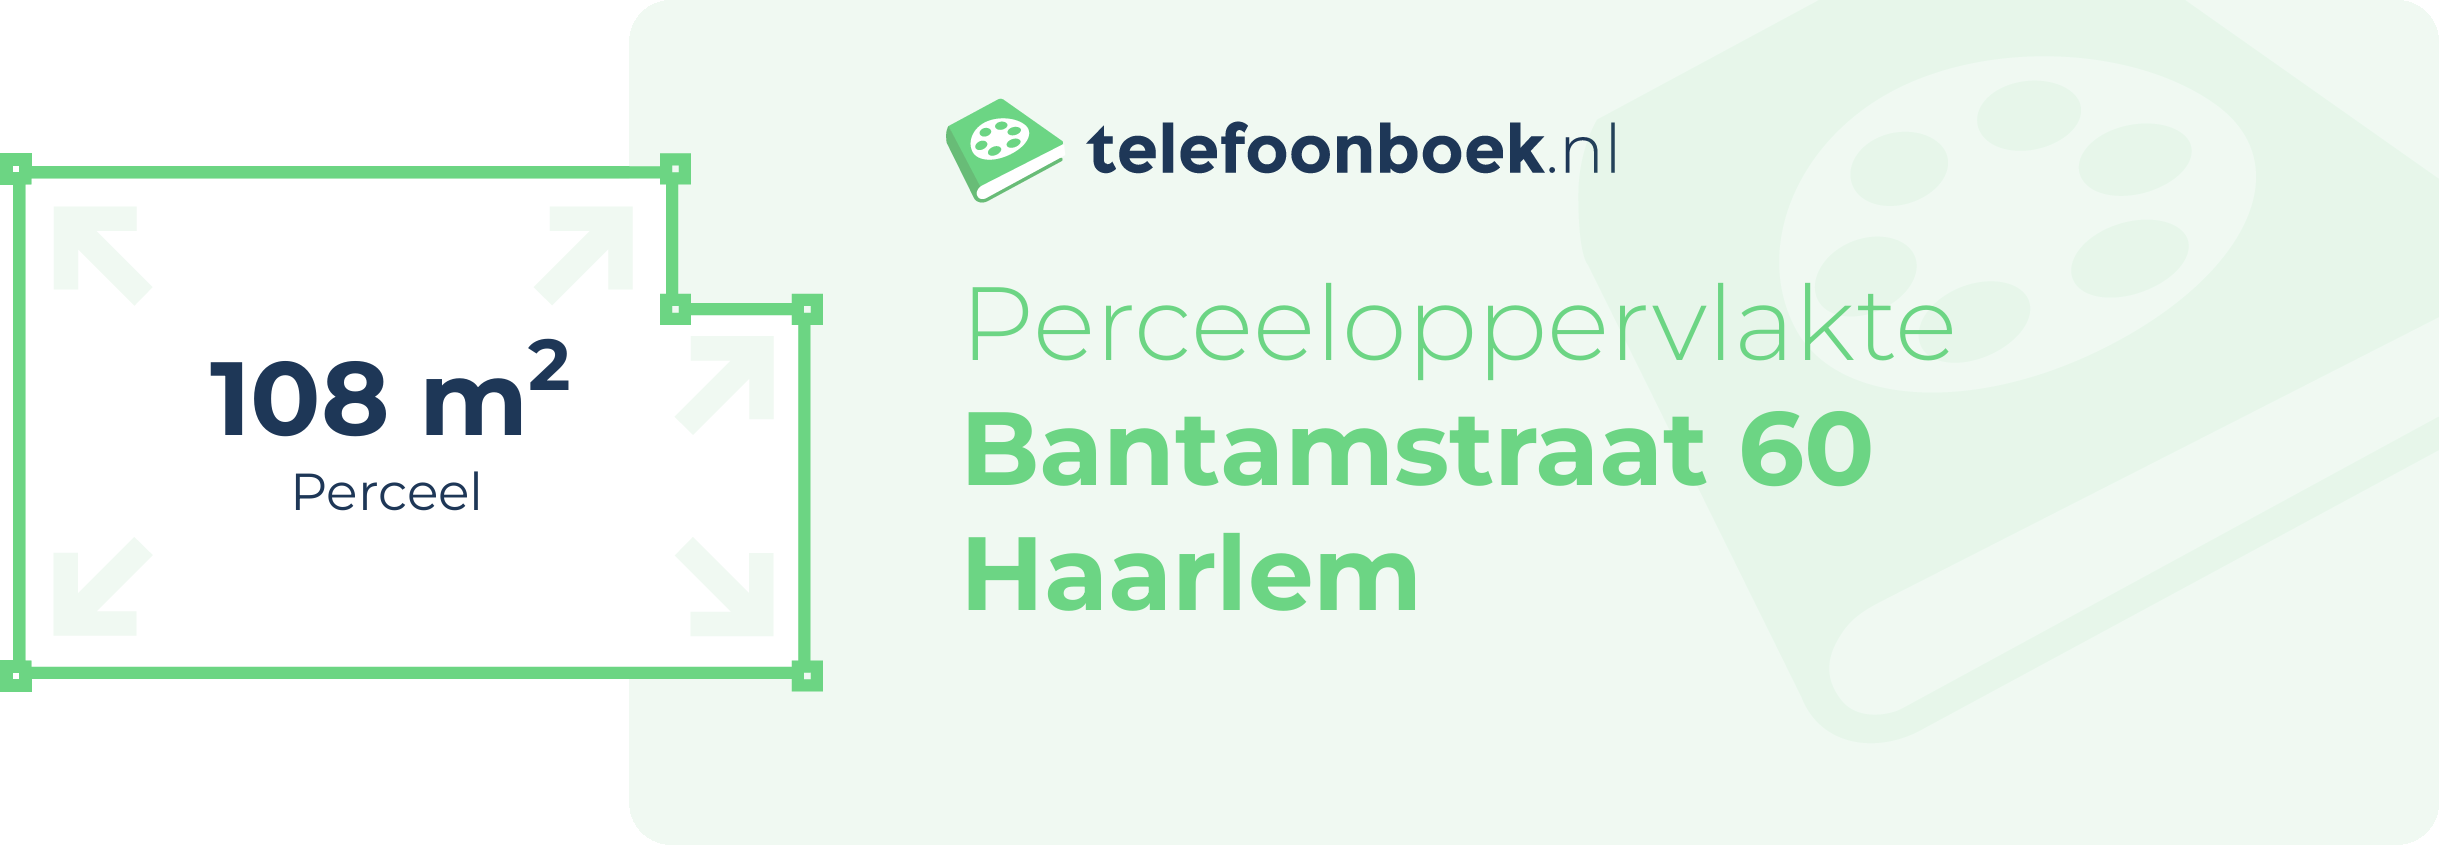 Perceeloppervlakte Bantamstraat 60 Haarlem